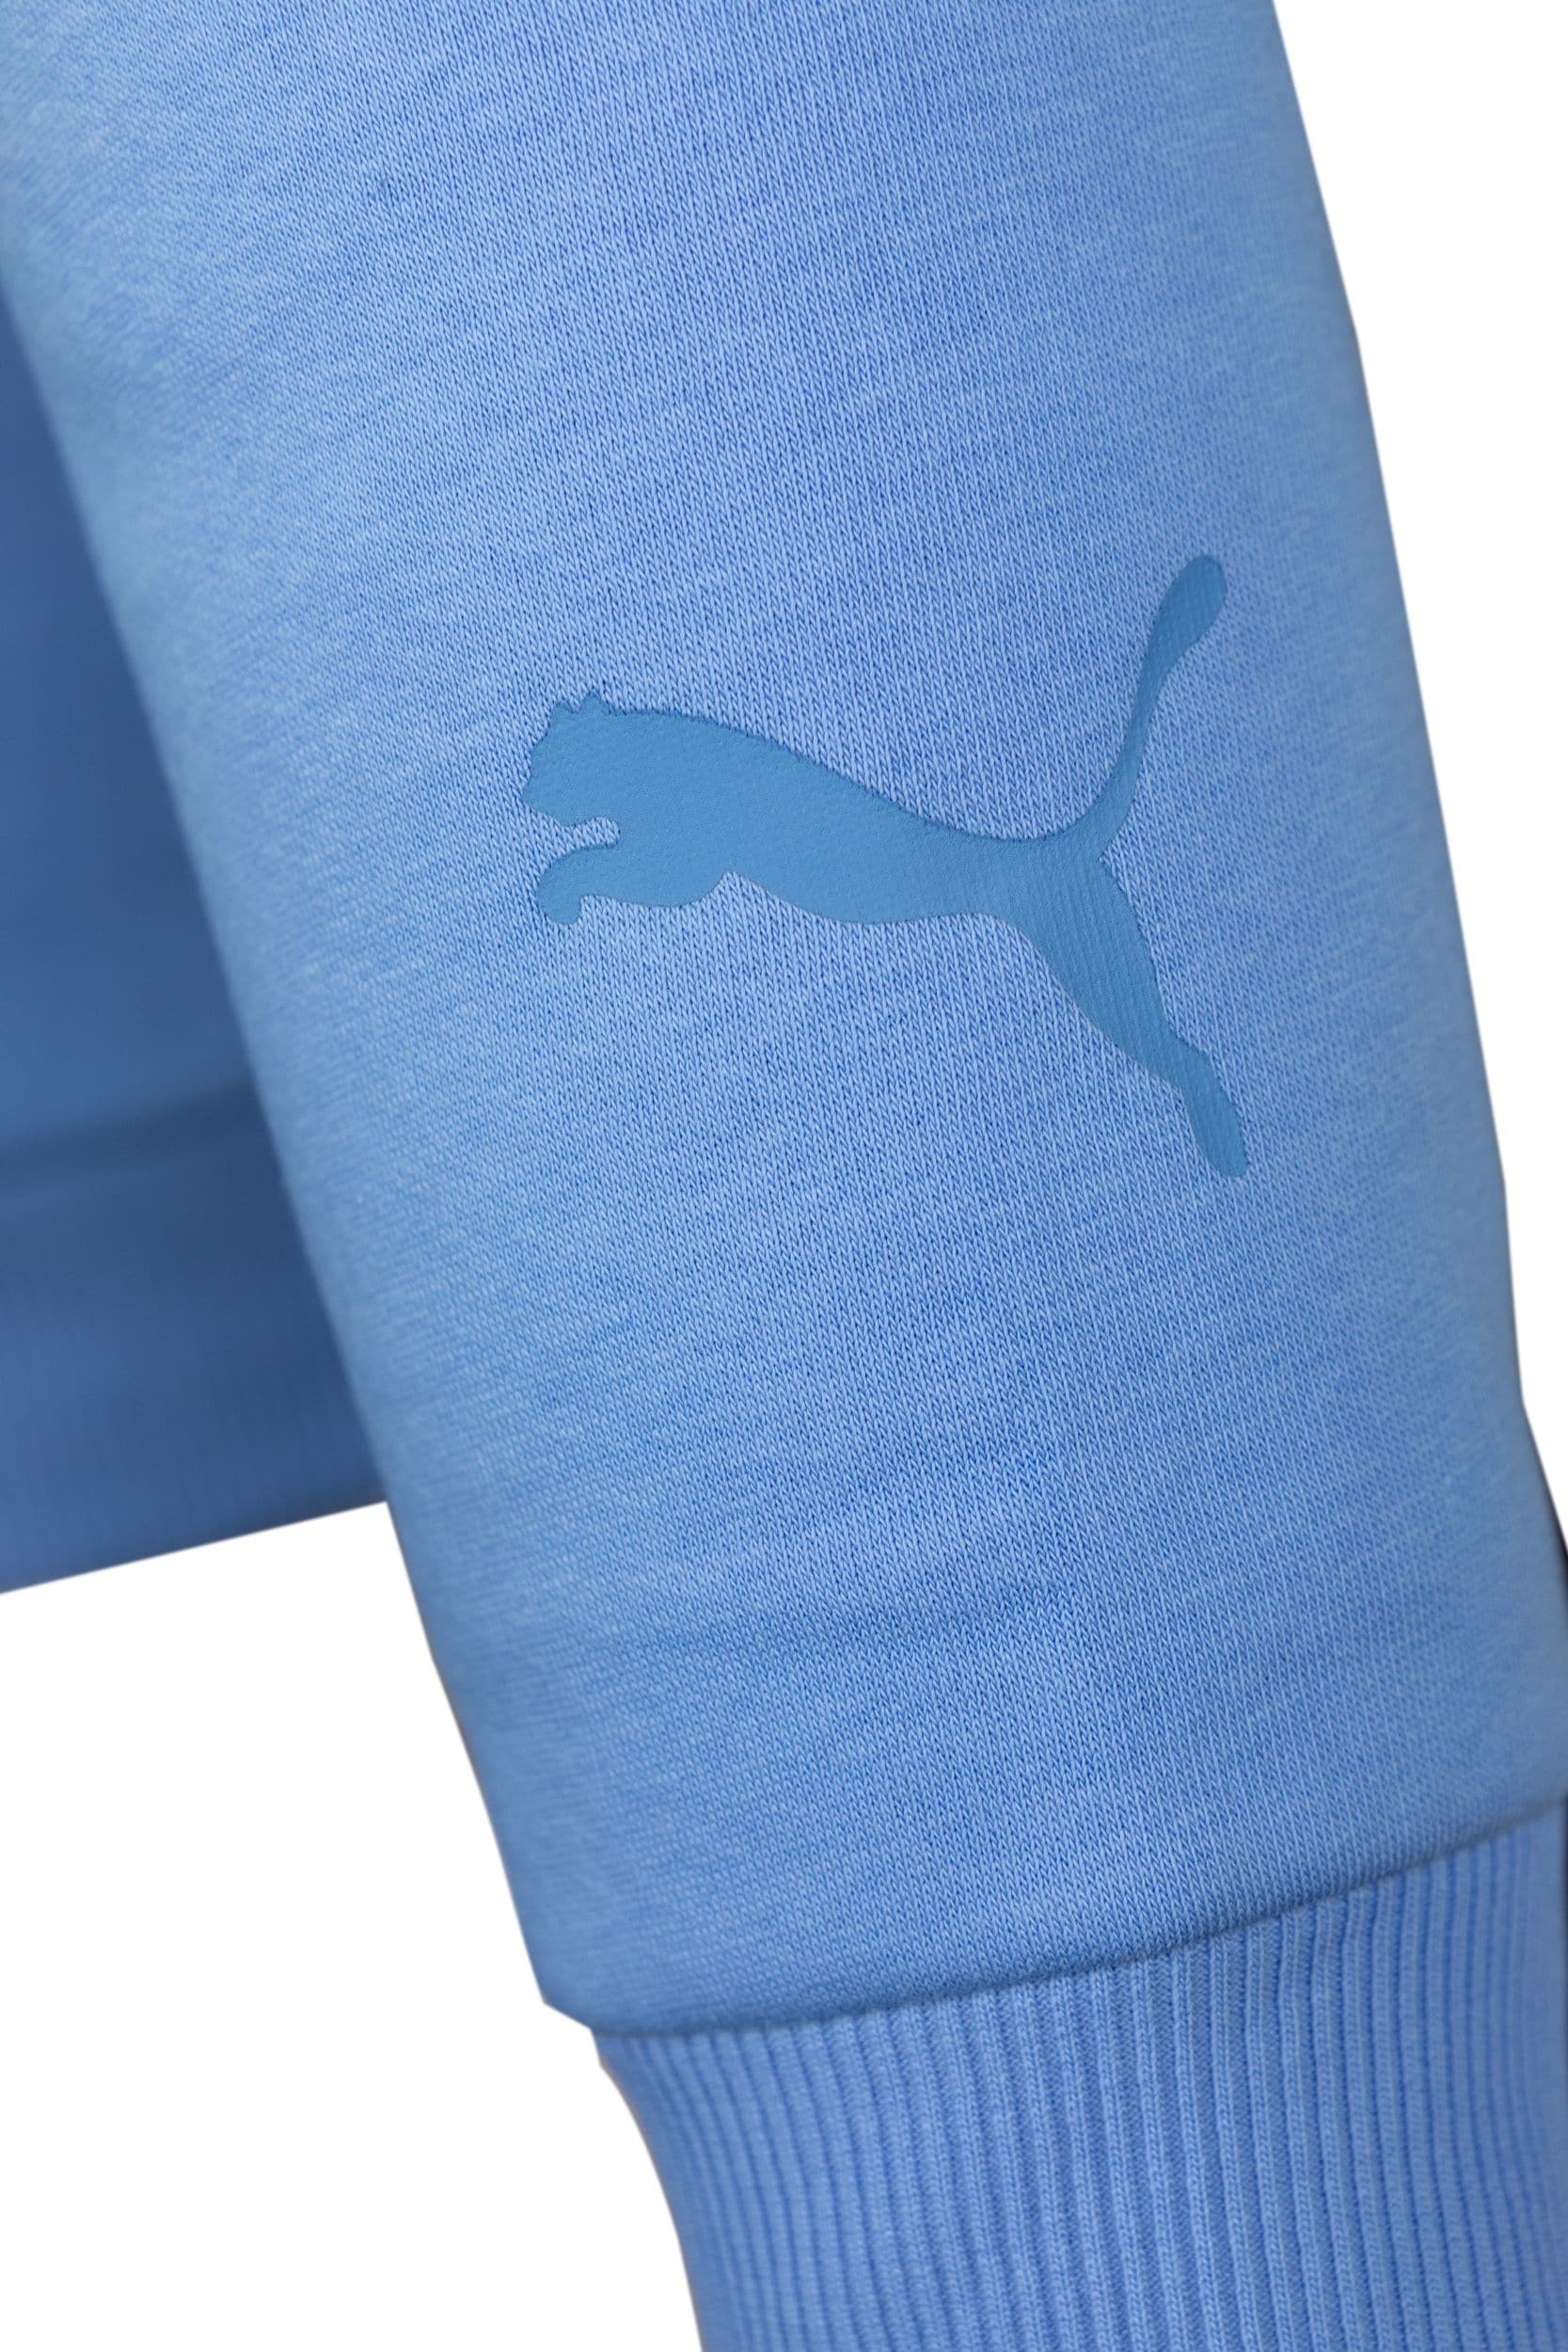 Puma barn hood ljusblå stor logo